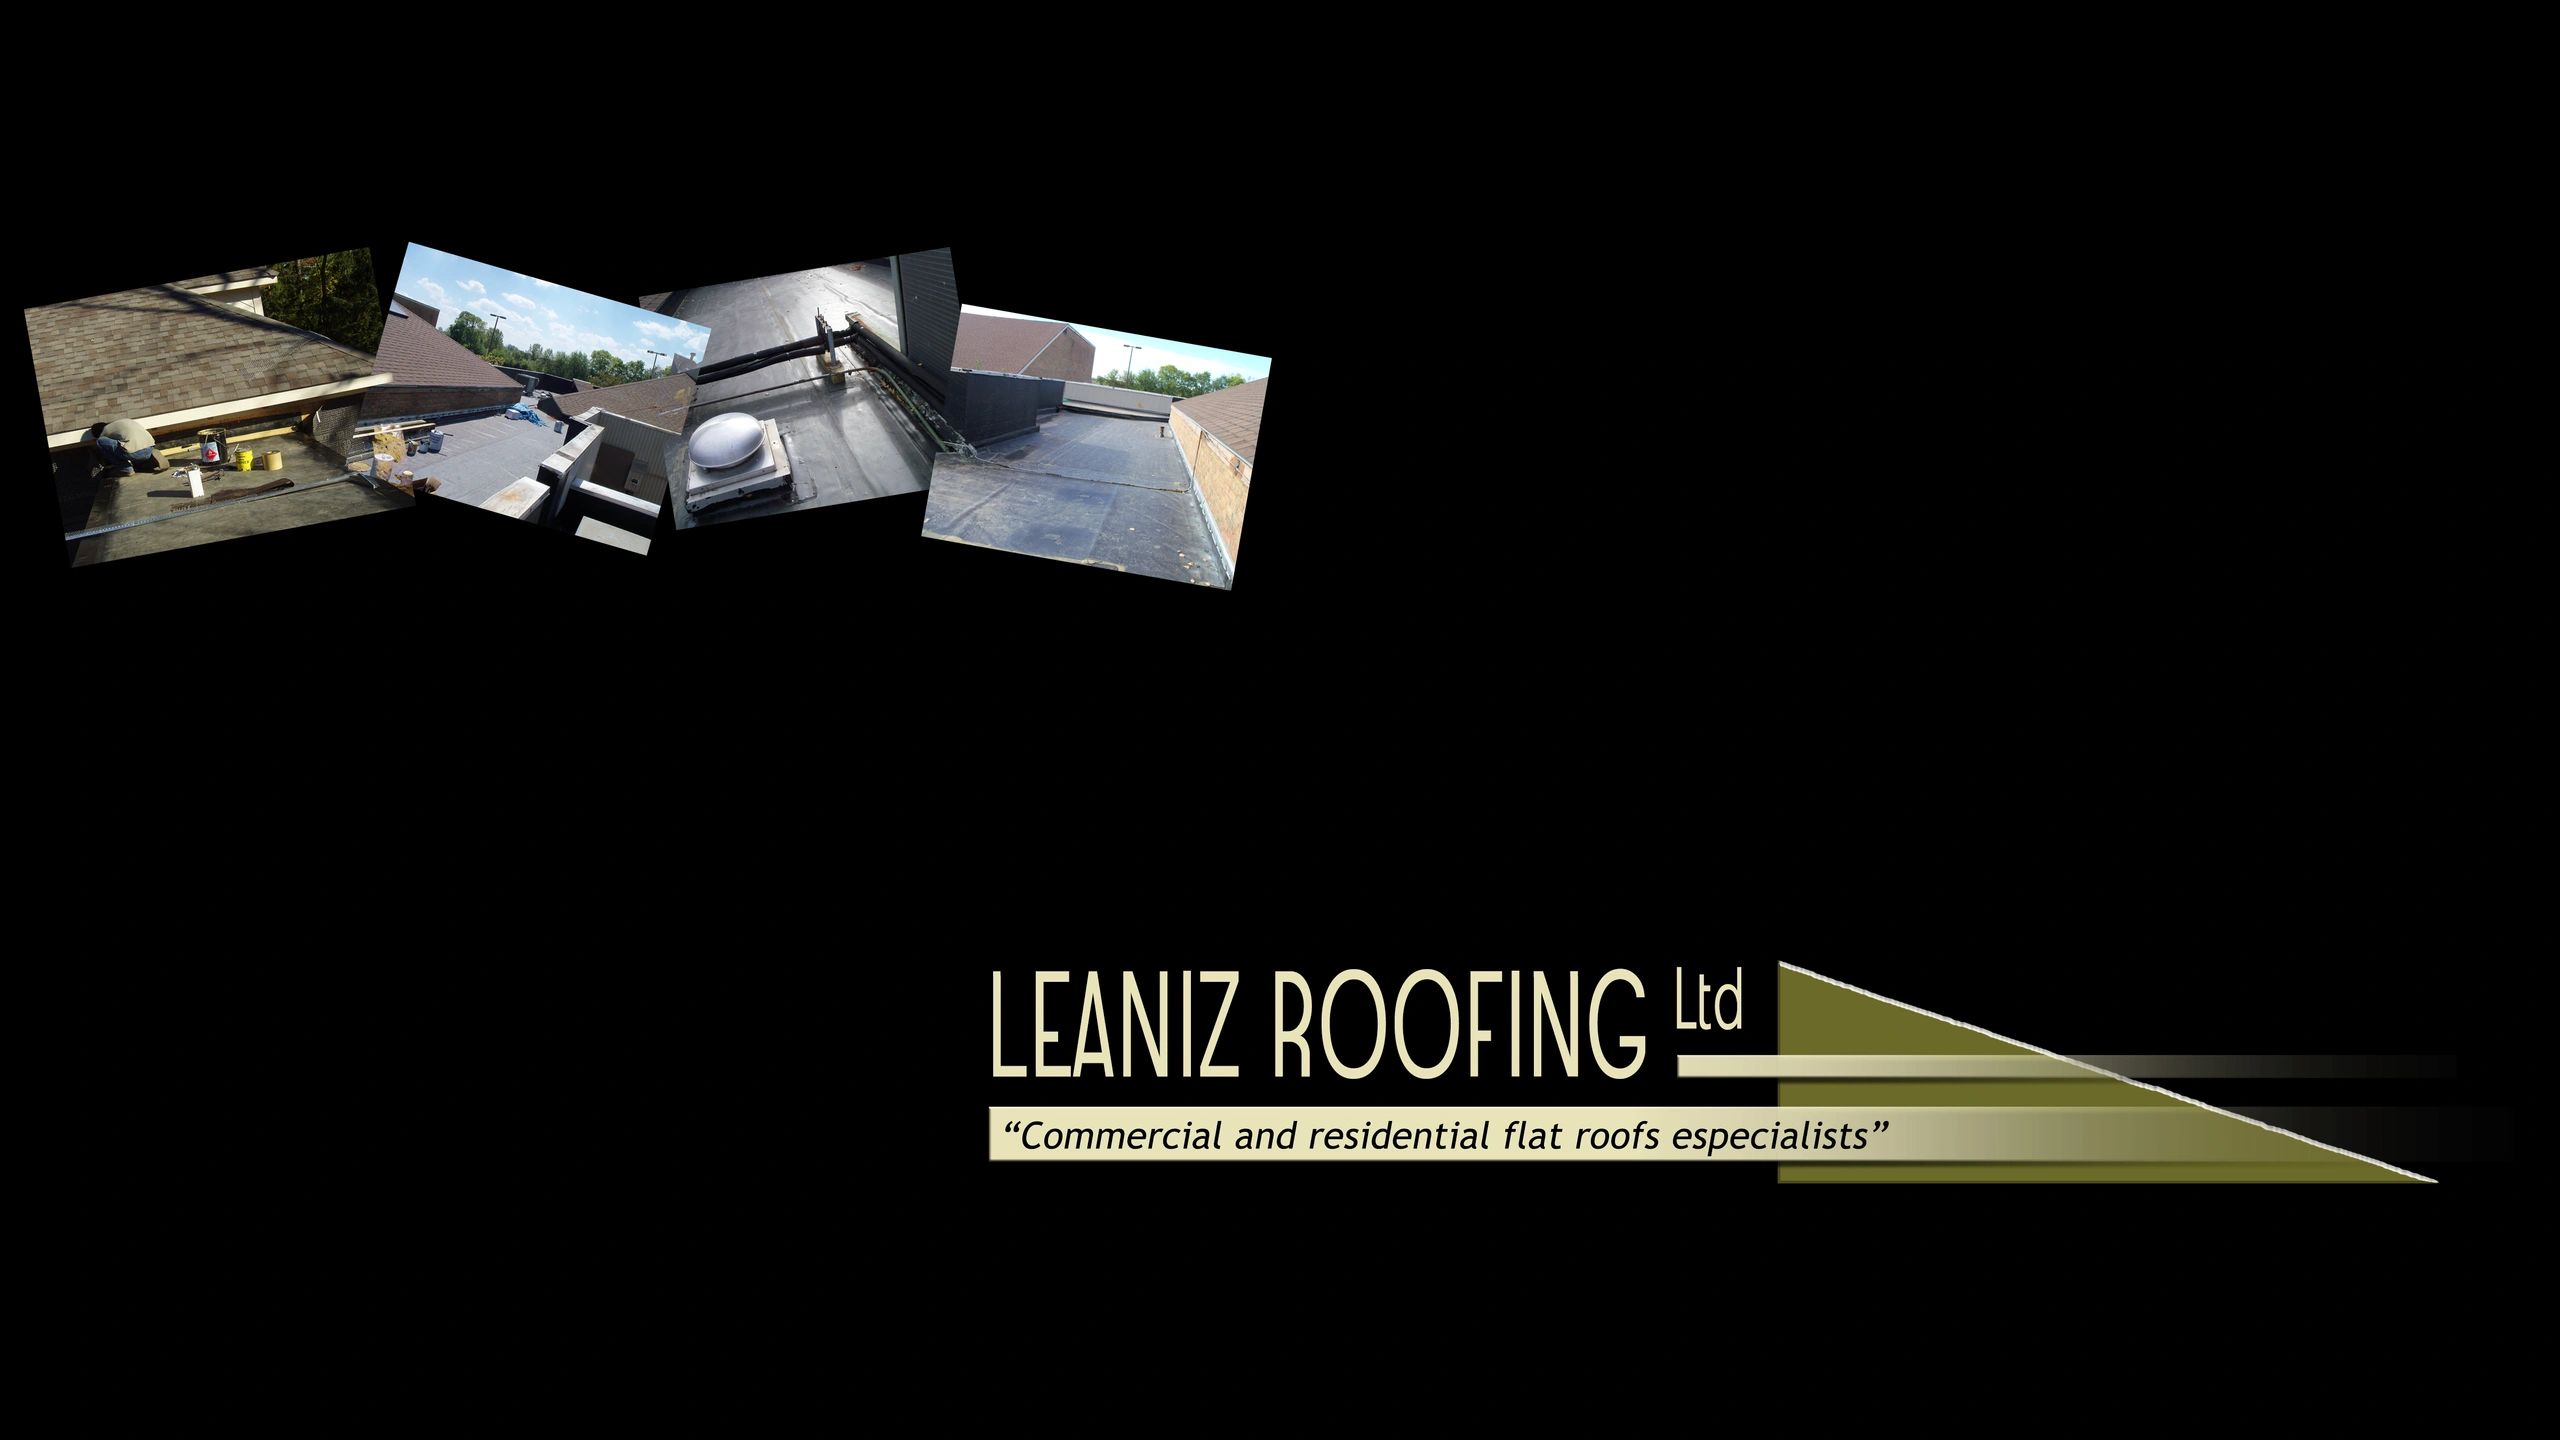 Leaniz Roofing Ltd